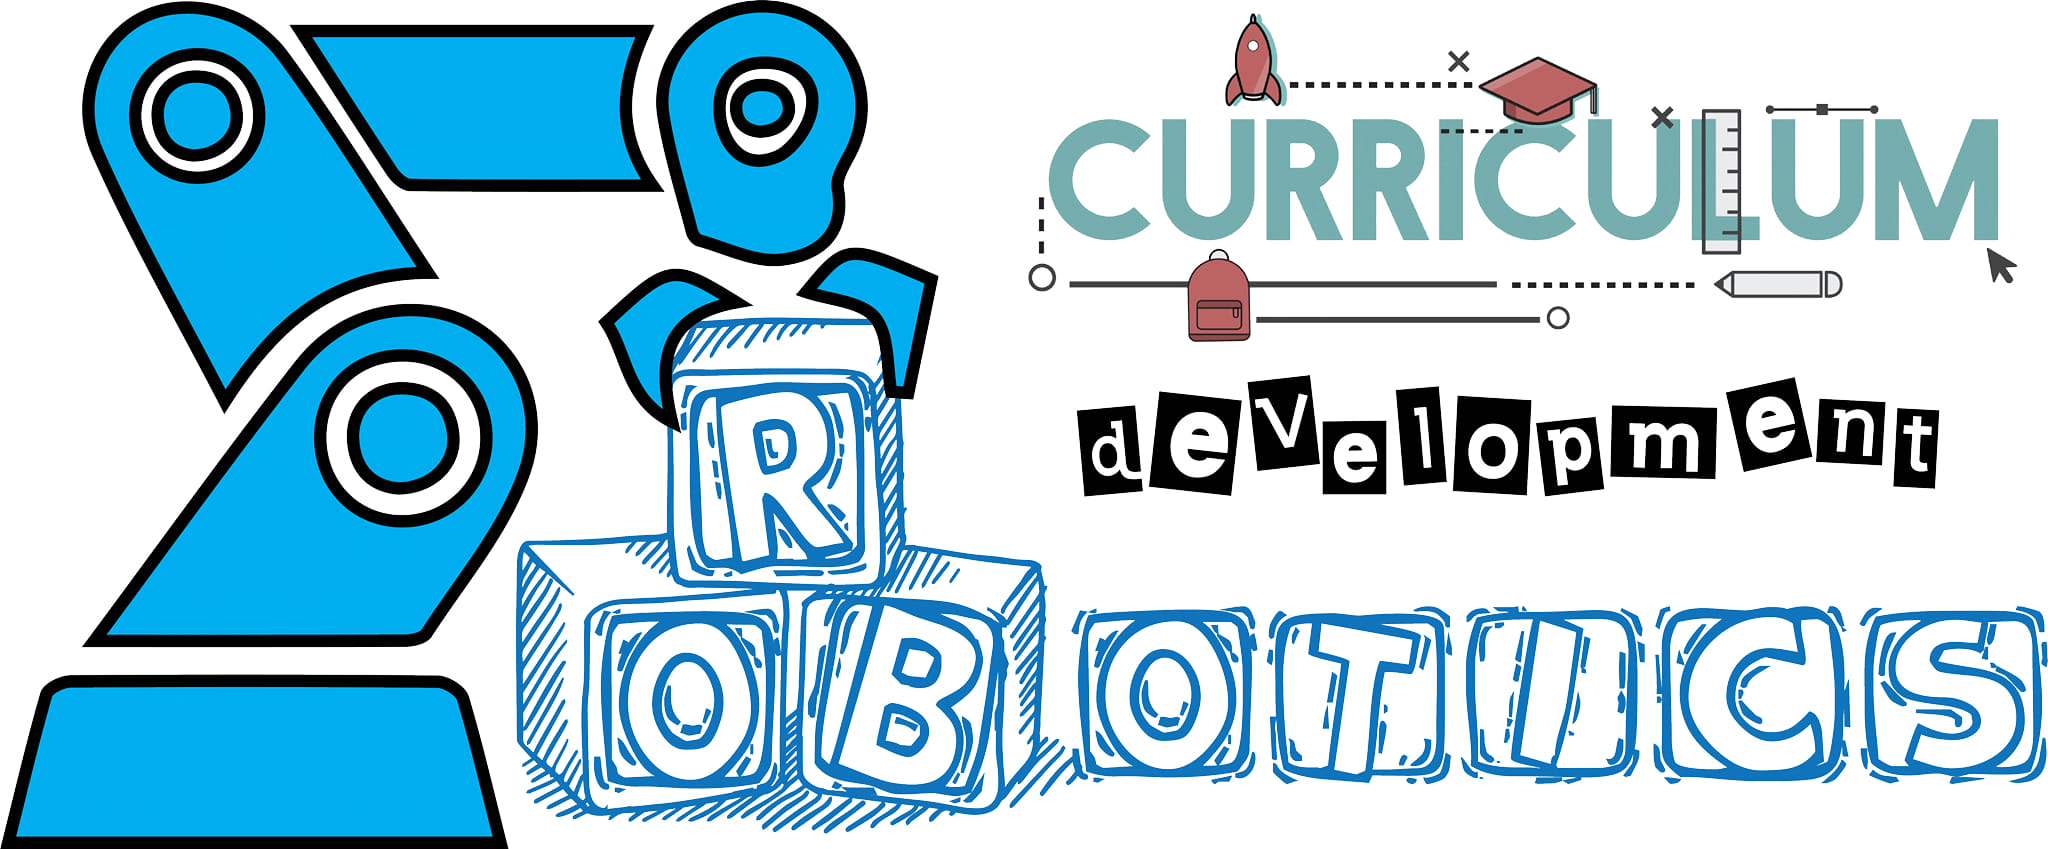 Robotics Curriculum Development